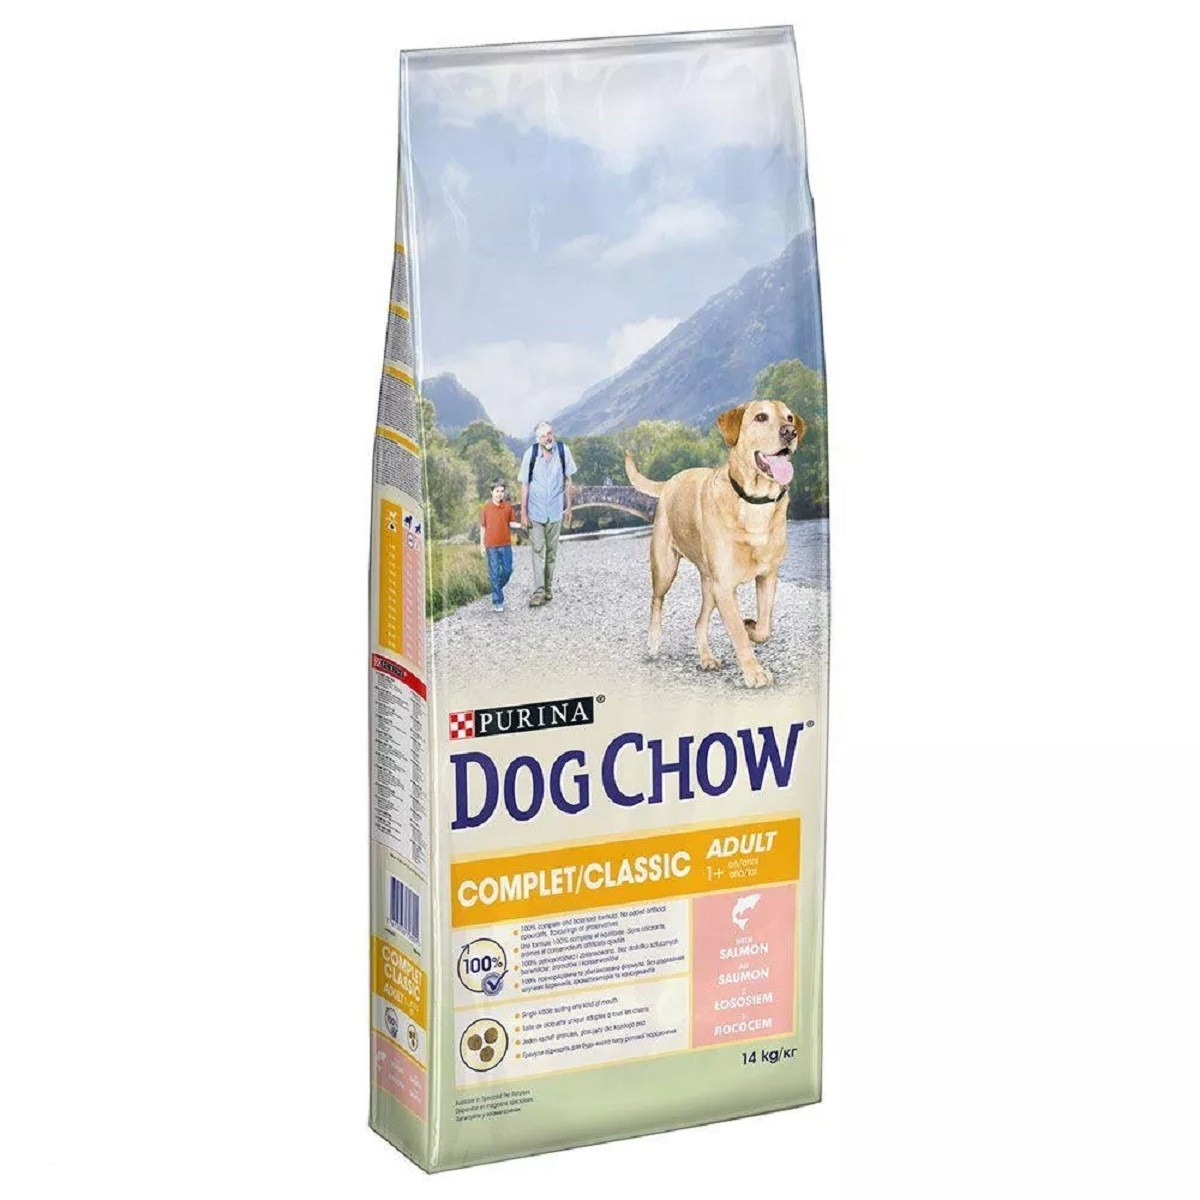 DOG CHOW pour chien Complet avec du Saumon